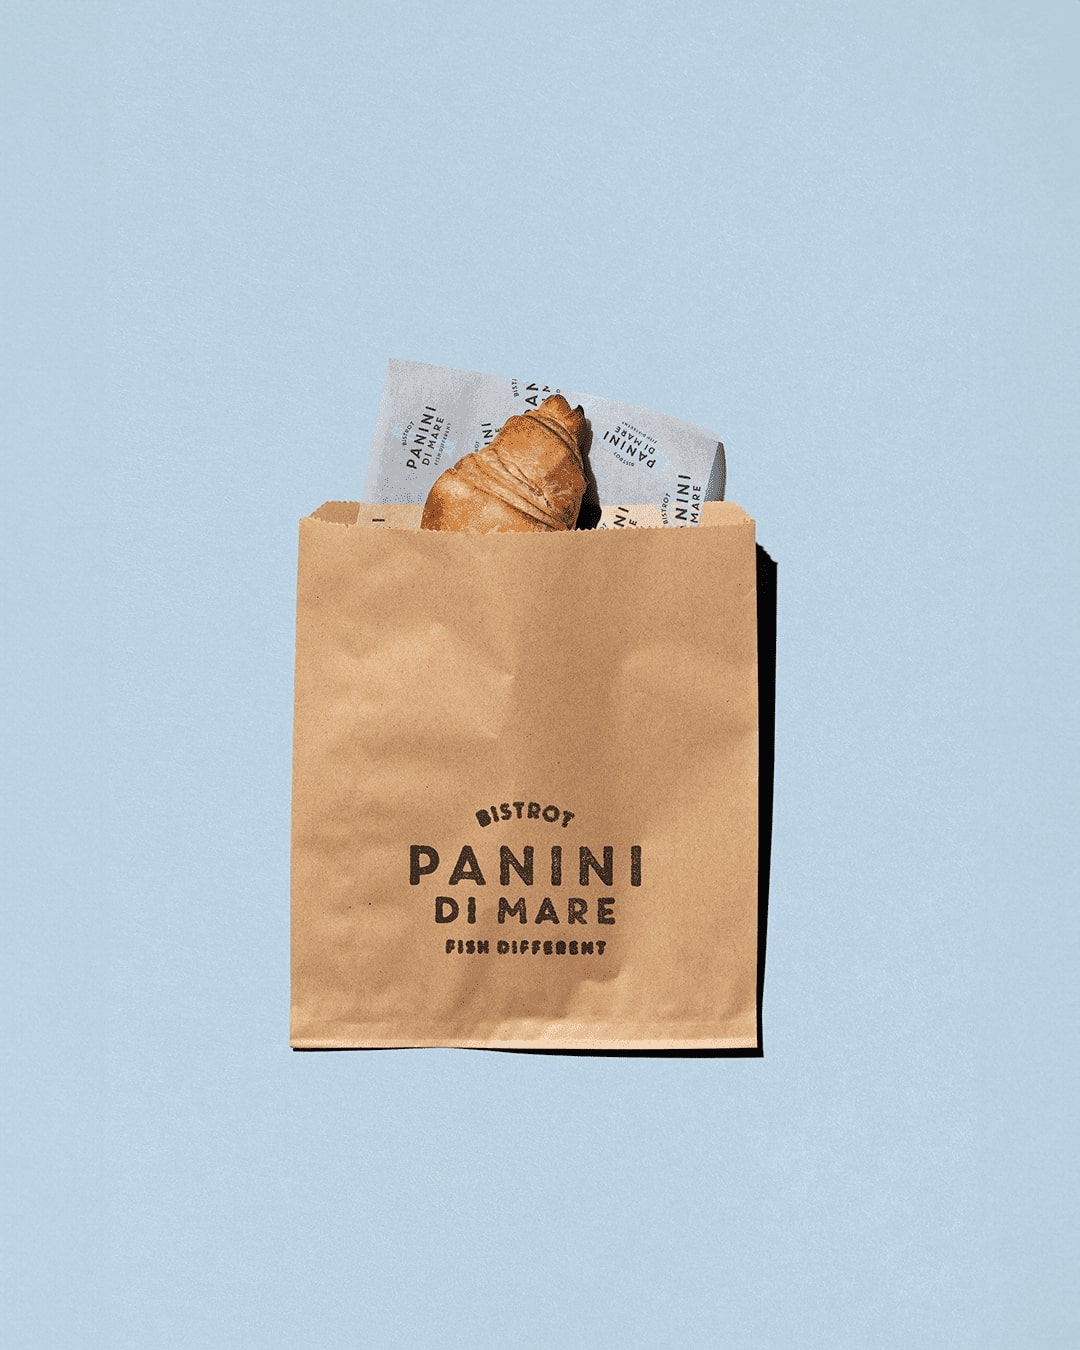 Antonio Morsillo Create Panini di Mare Rebranding and Packaging Design